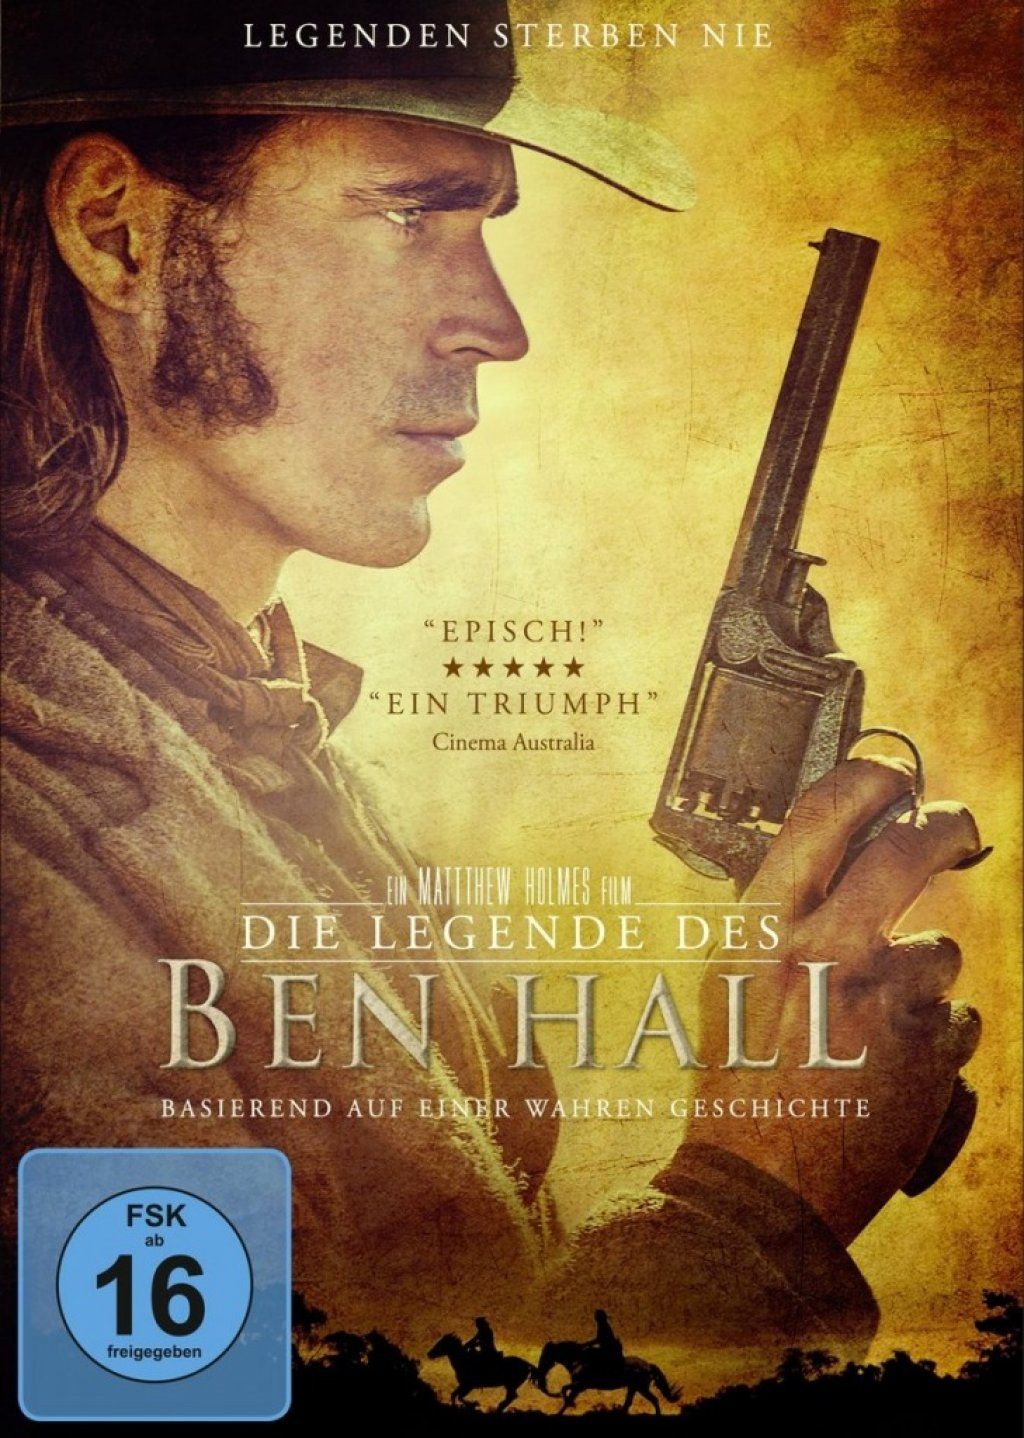 Legende des Ben Hall, Die